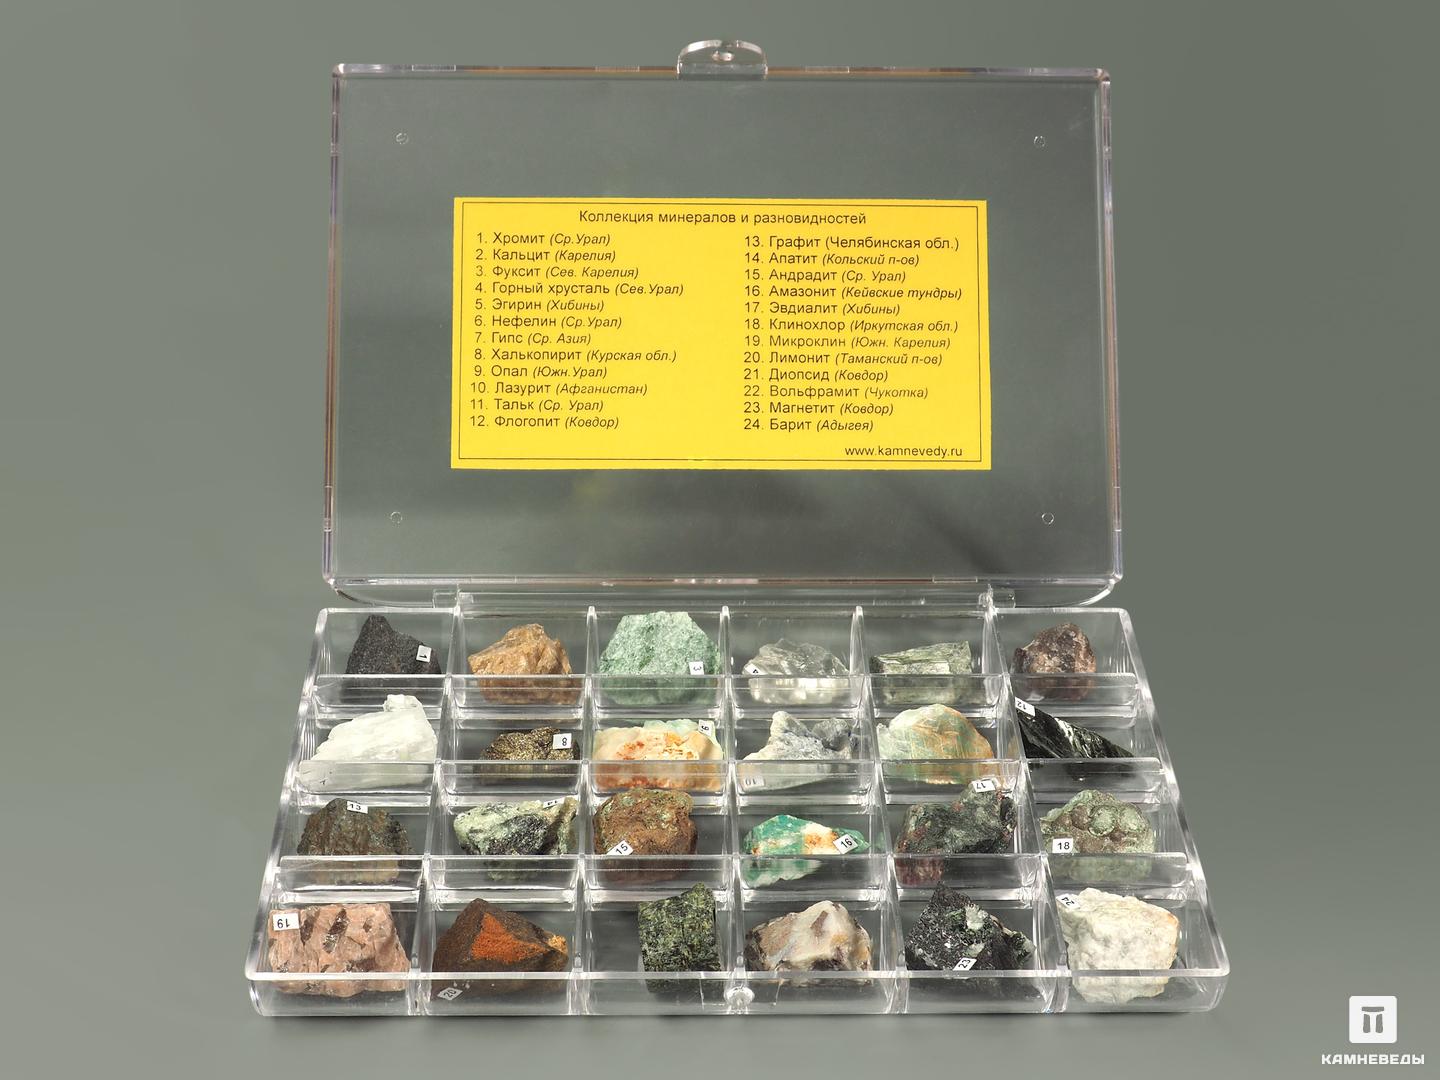 Коллекция минералов и разновидностей (24 образца, состав №10)